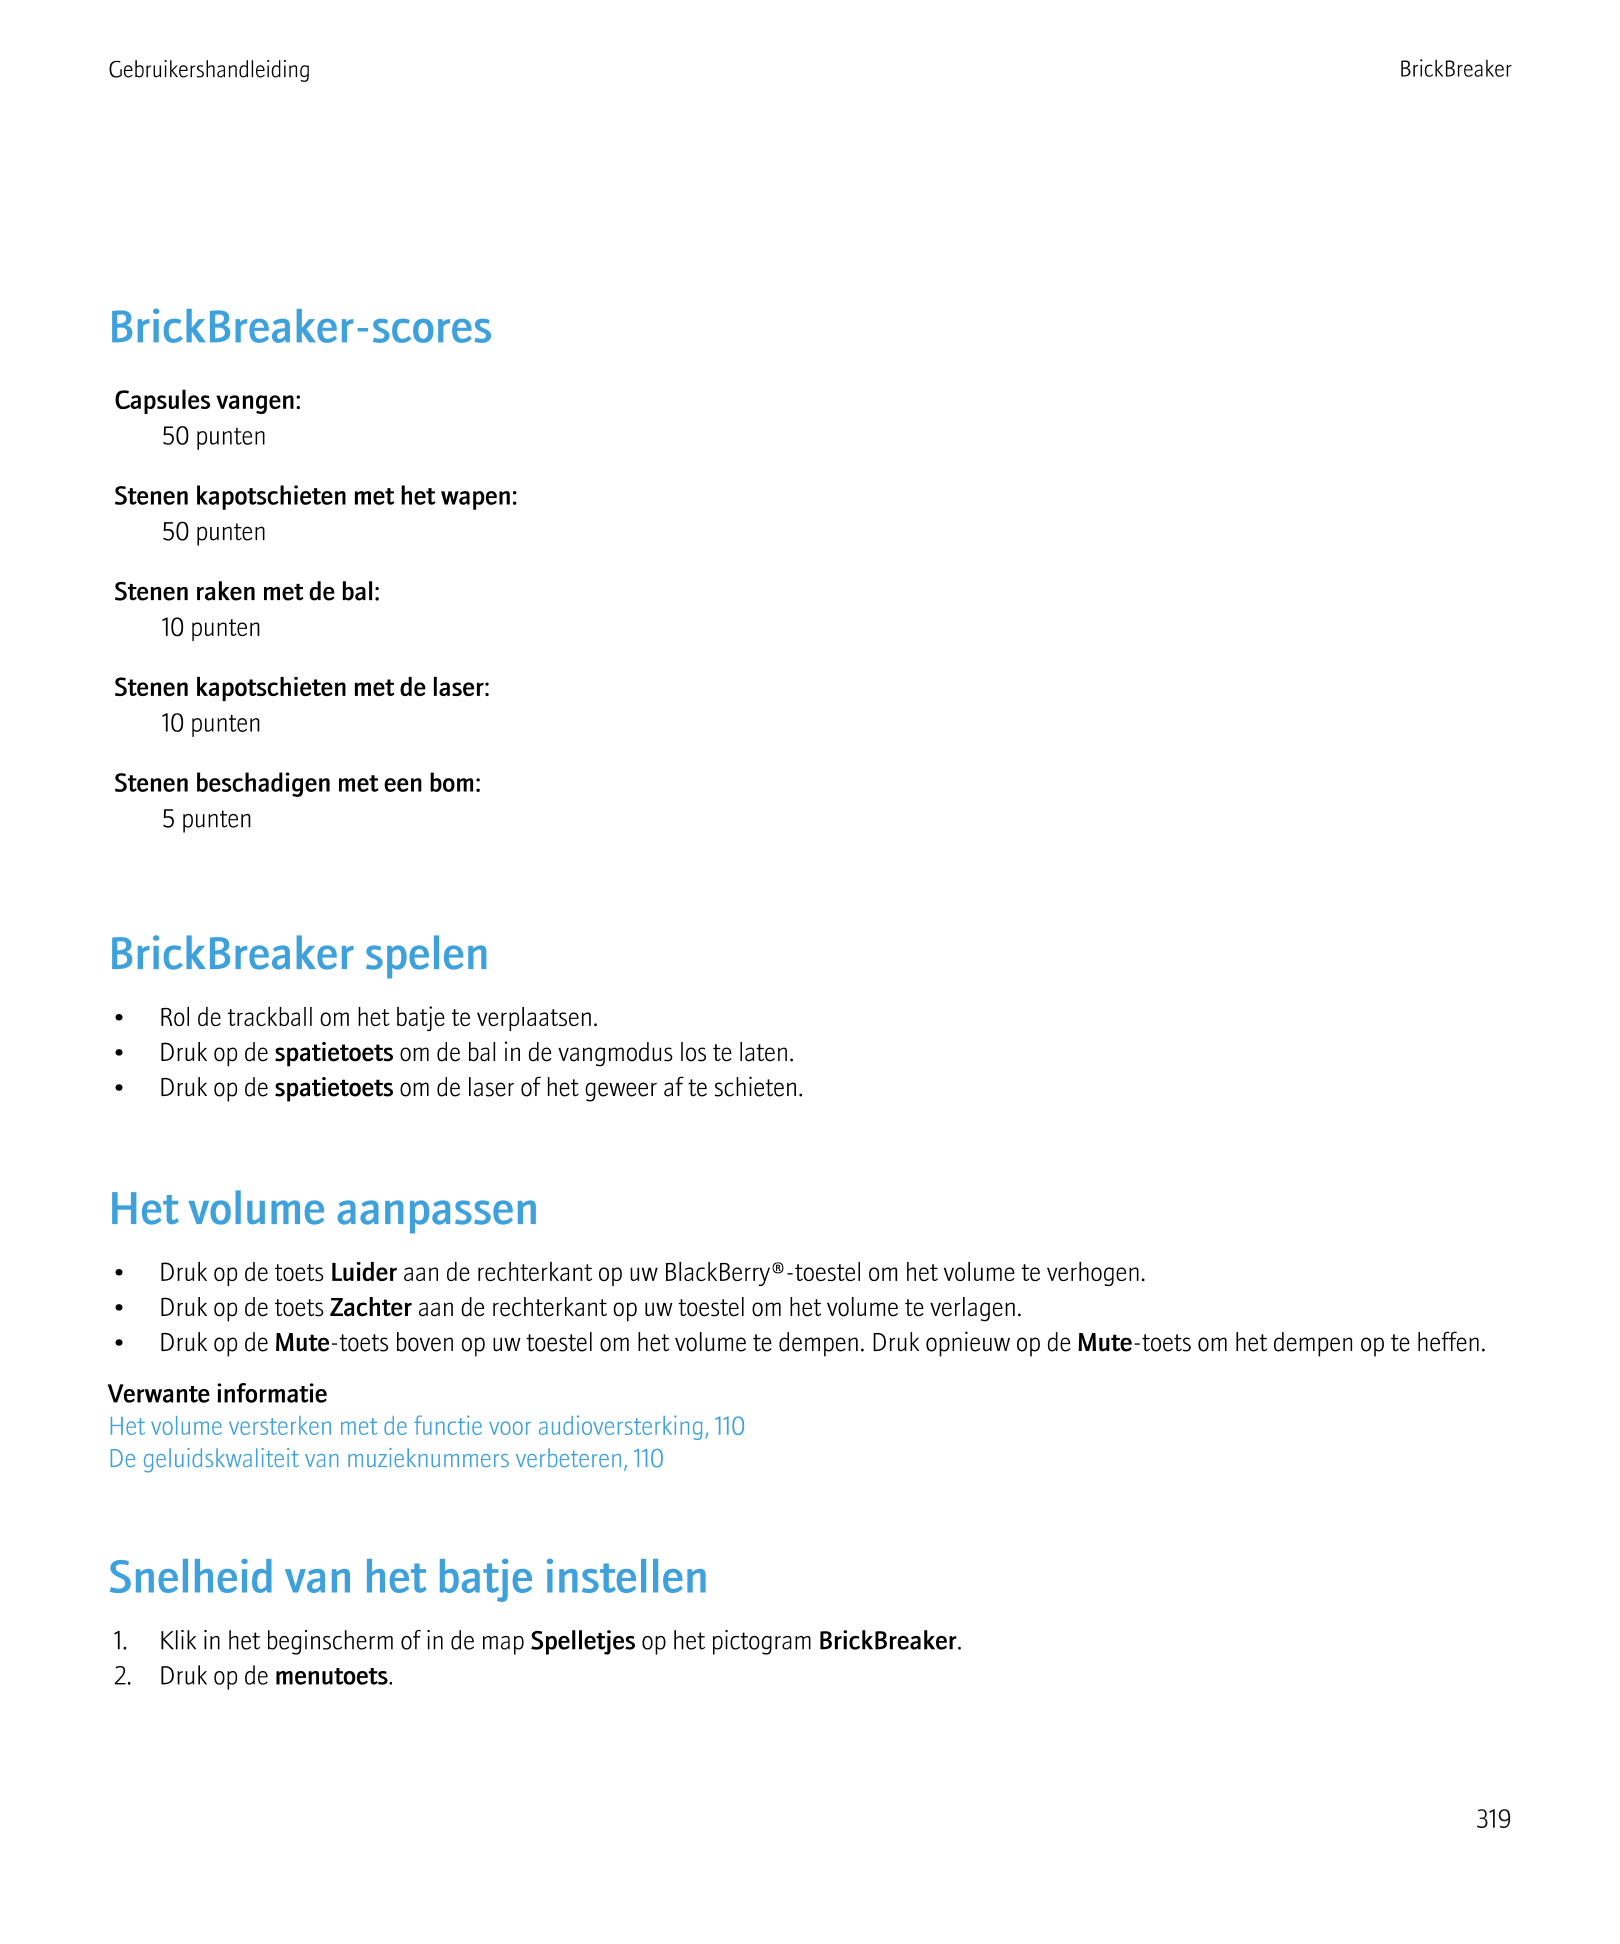 Gebruikershandleiding BrickBreaker
BrickBreaker-scores
Capsules vangen:
50 punten
Stenen kapotschieten met het wapen:
50 punten
